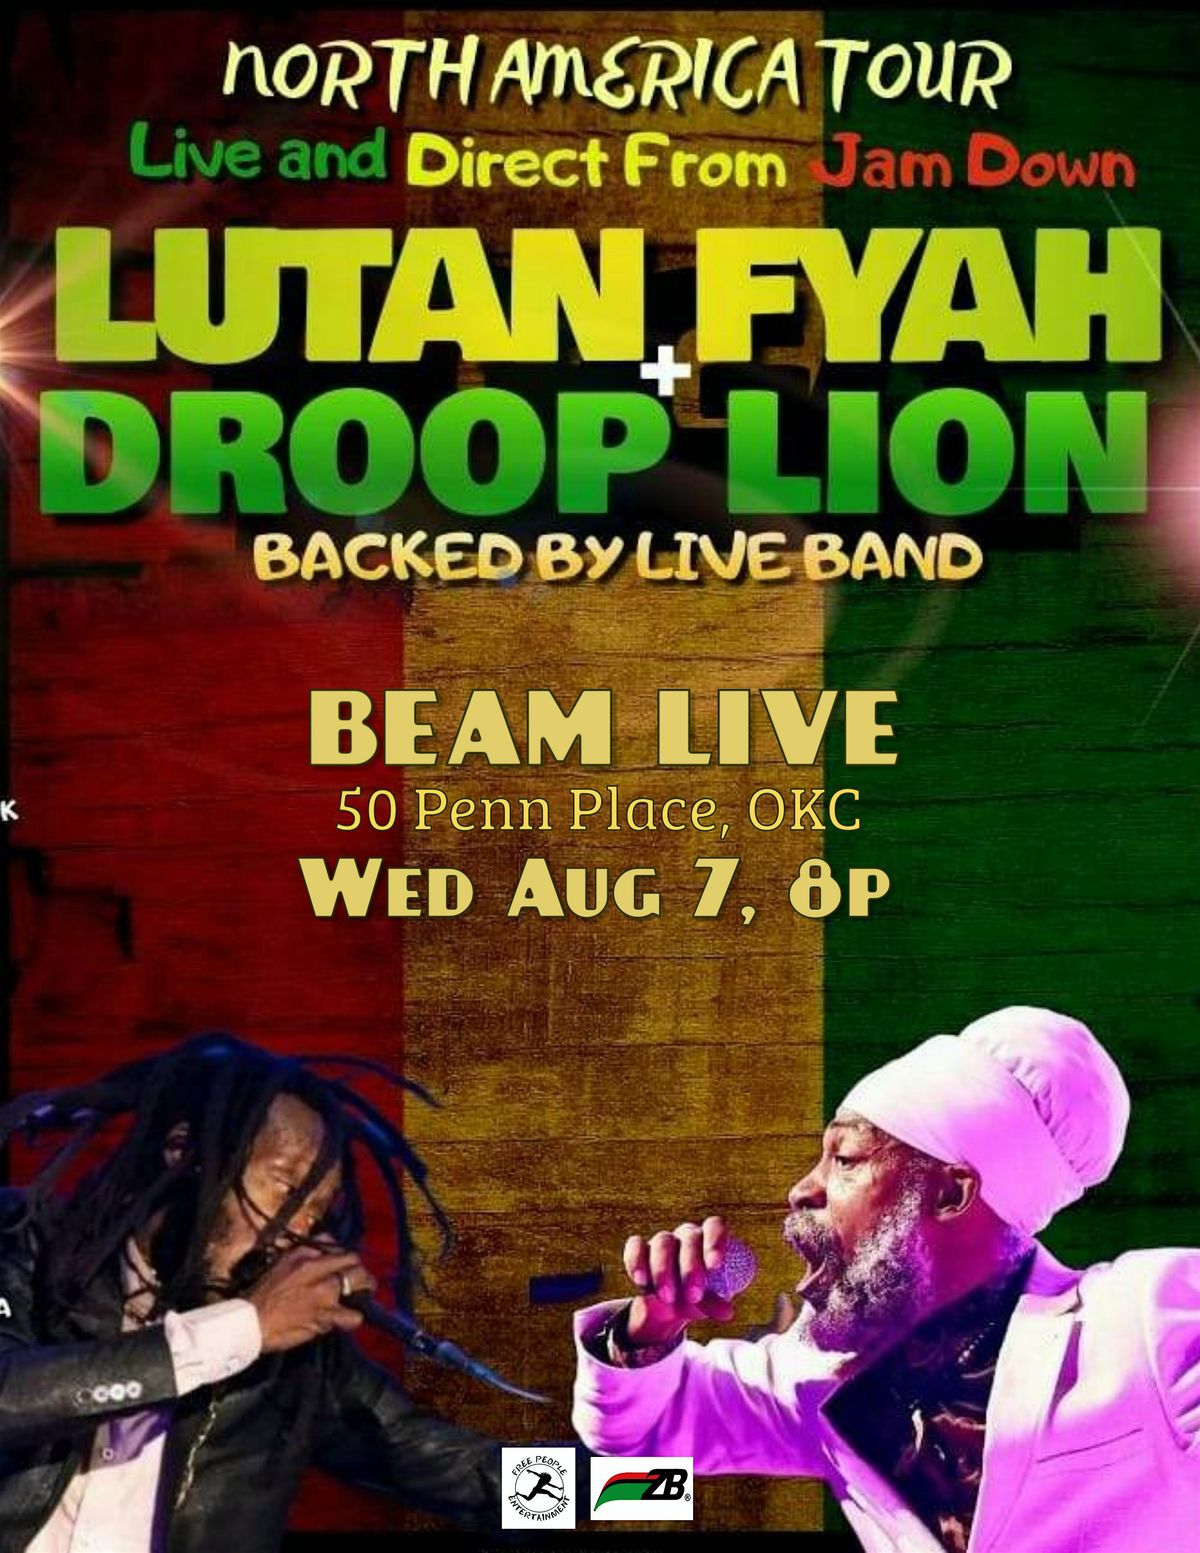 Lutan Fyah and Droop Lion